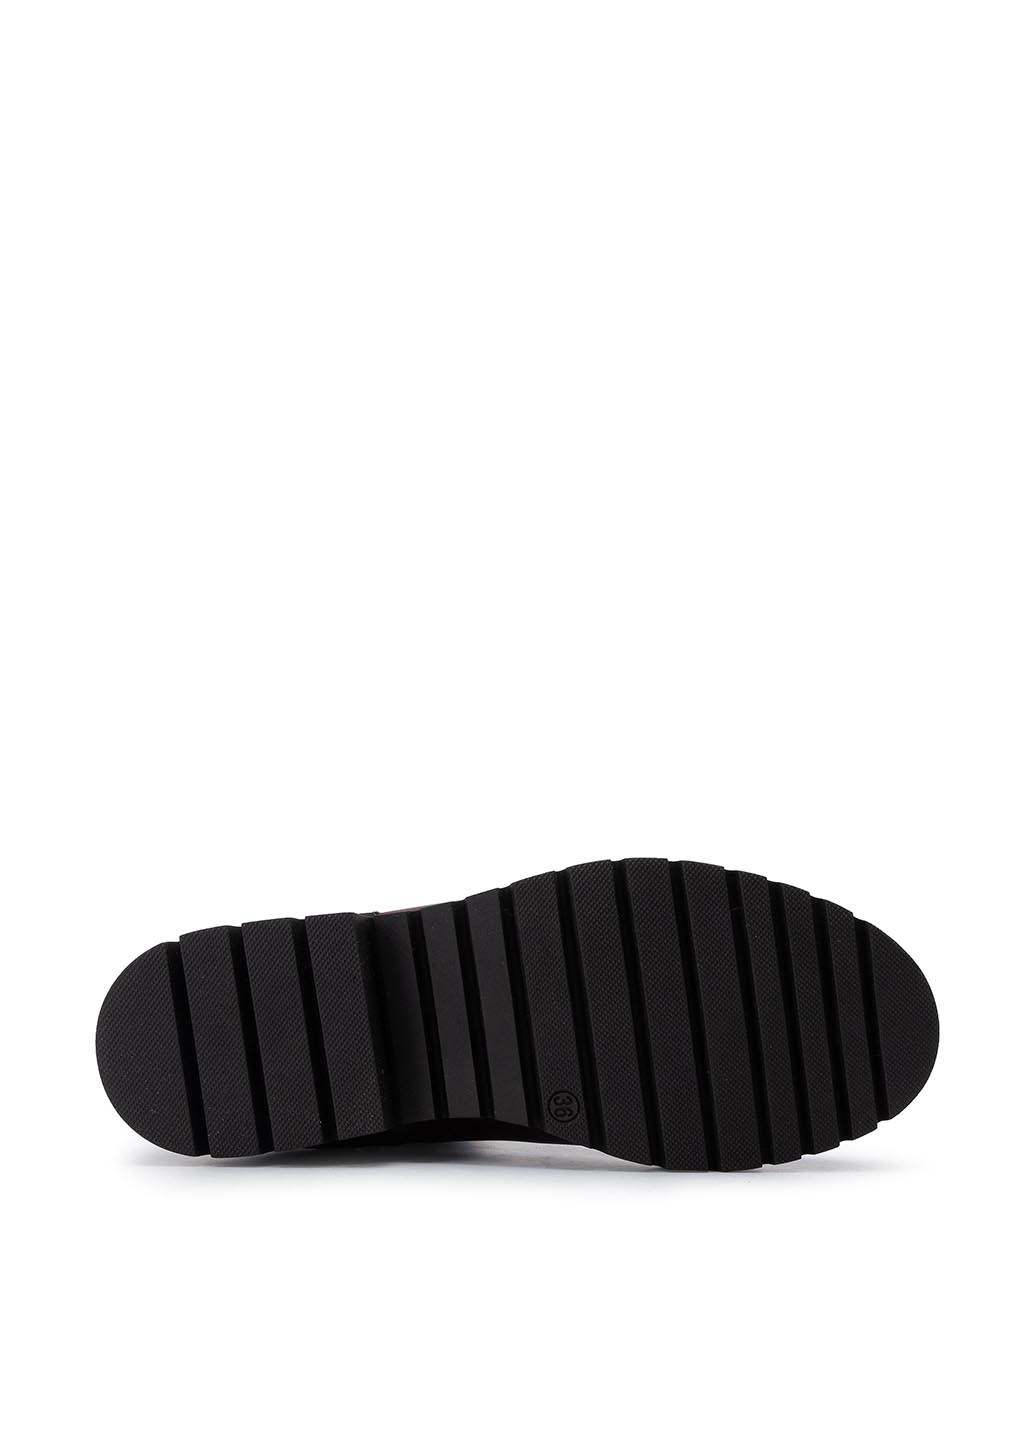 Зимние черевики sm-d621 Lasocki без декора